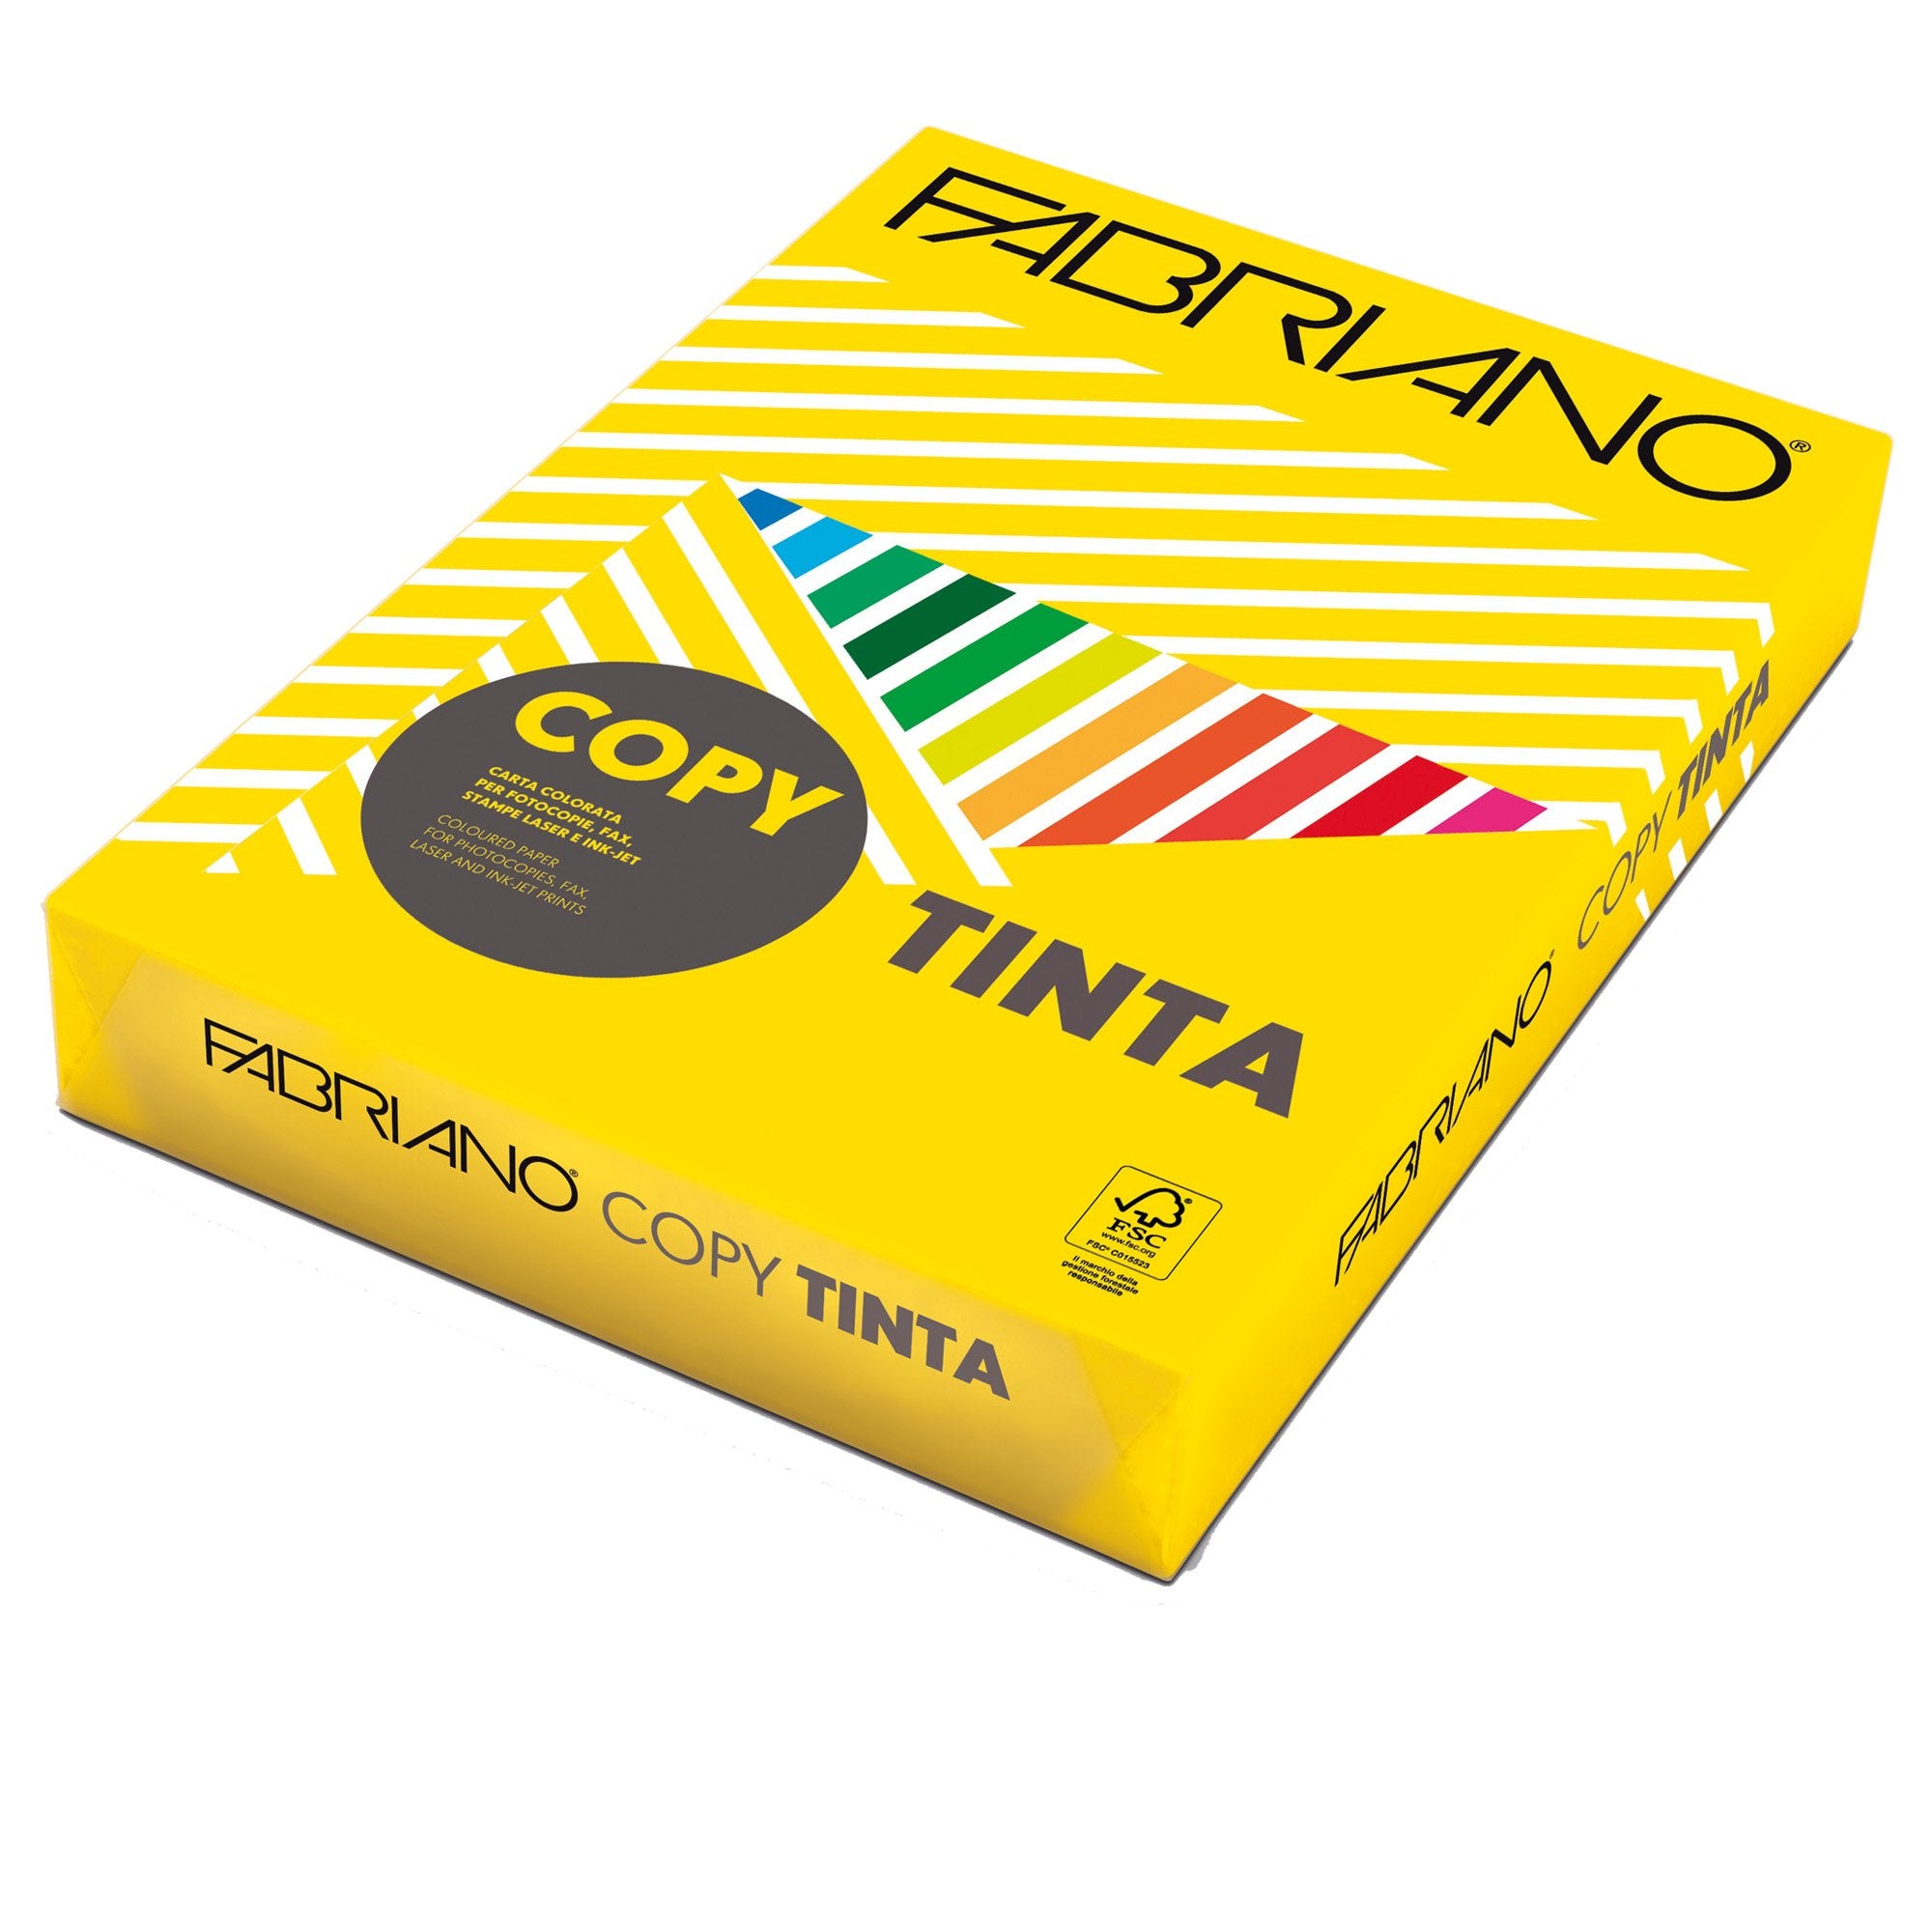 fabriano-carta-copy-tinta-a4-80gr-500fg-col-forti-giallo